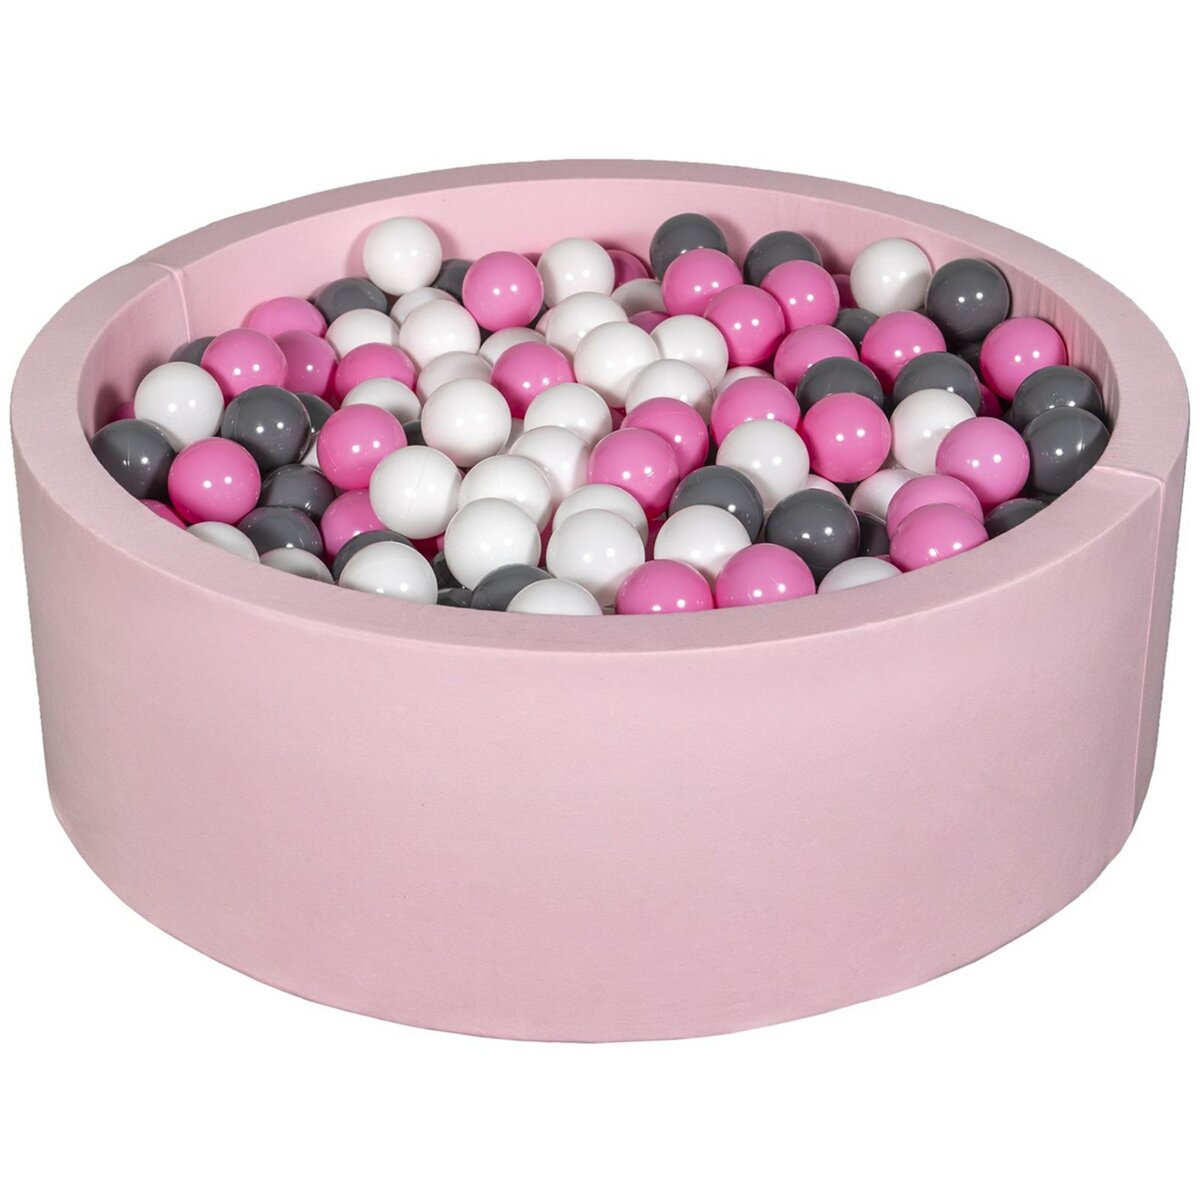  Piscine à balles Aire de jeu + 450 balles rose blanc,rose clair,gris